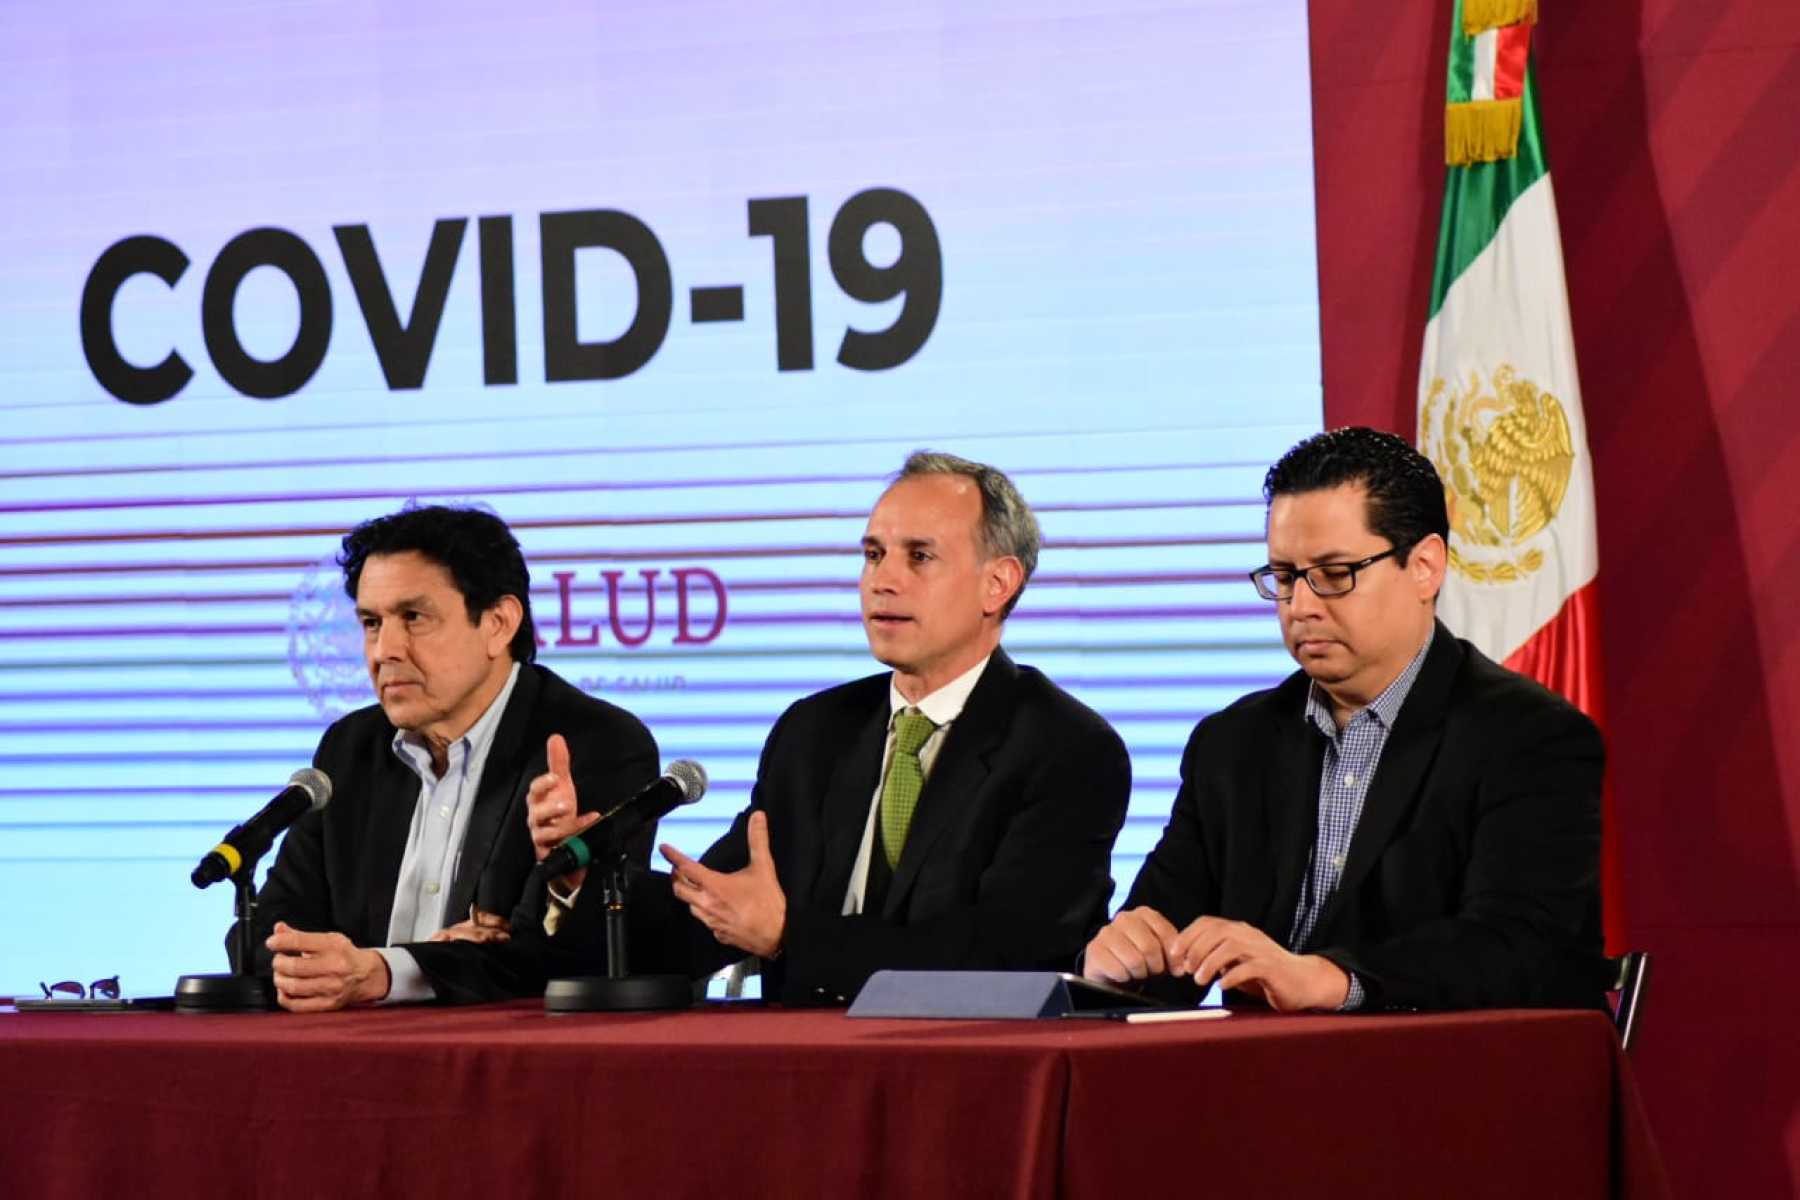 El subsecretario de Salud, Hugo López-Gatell, informó que los cinco casos confirmados de COVID-19 en México han sido importados,